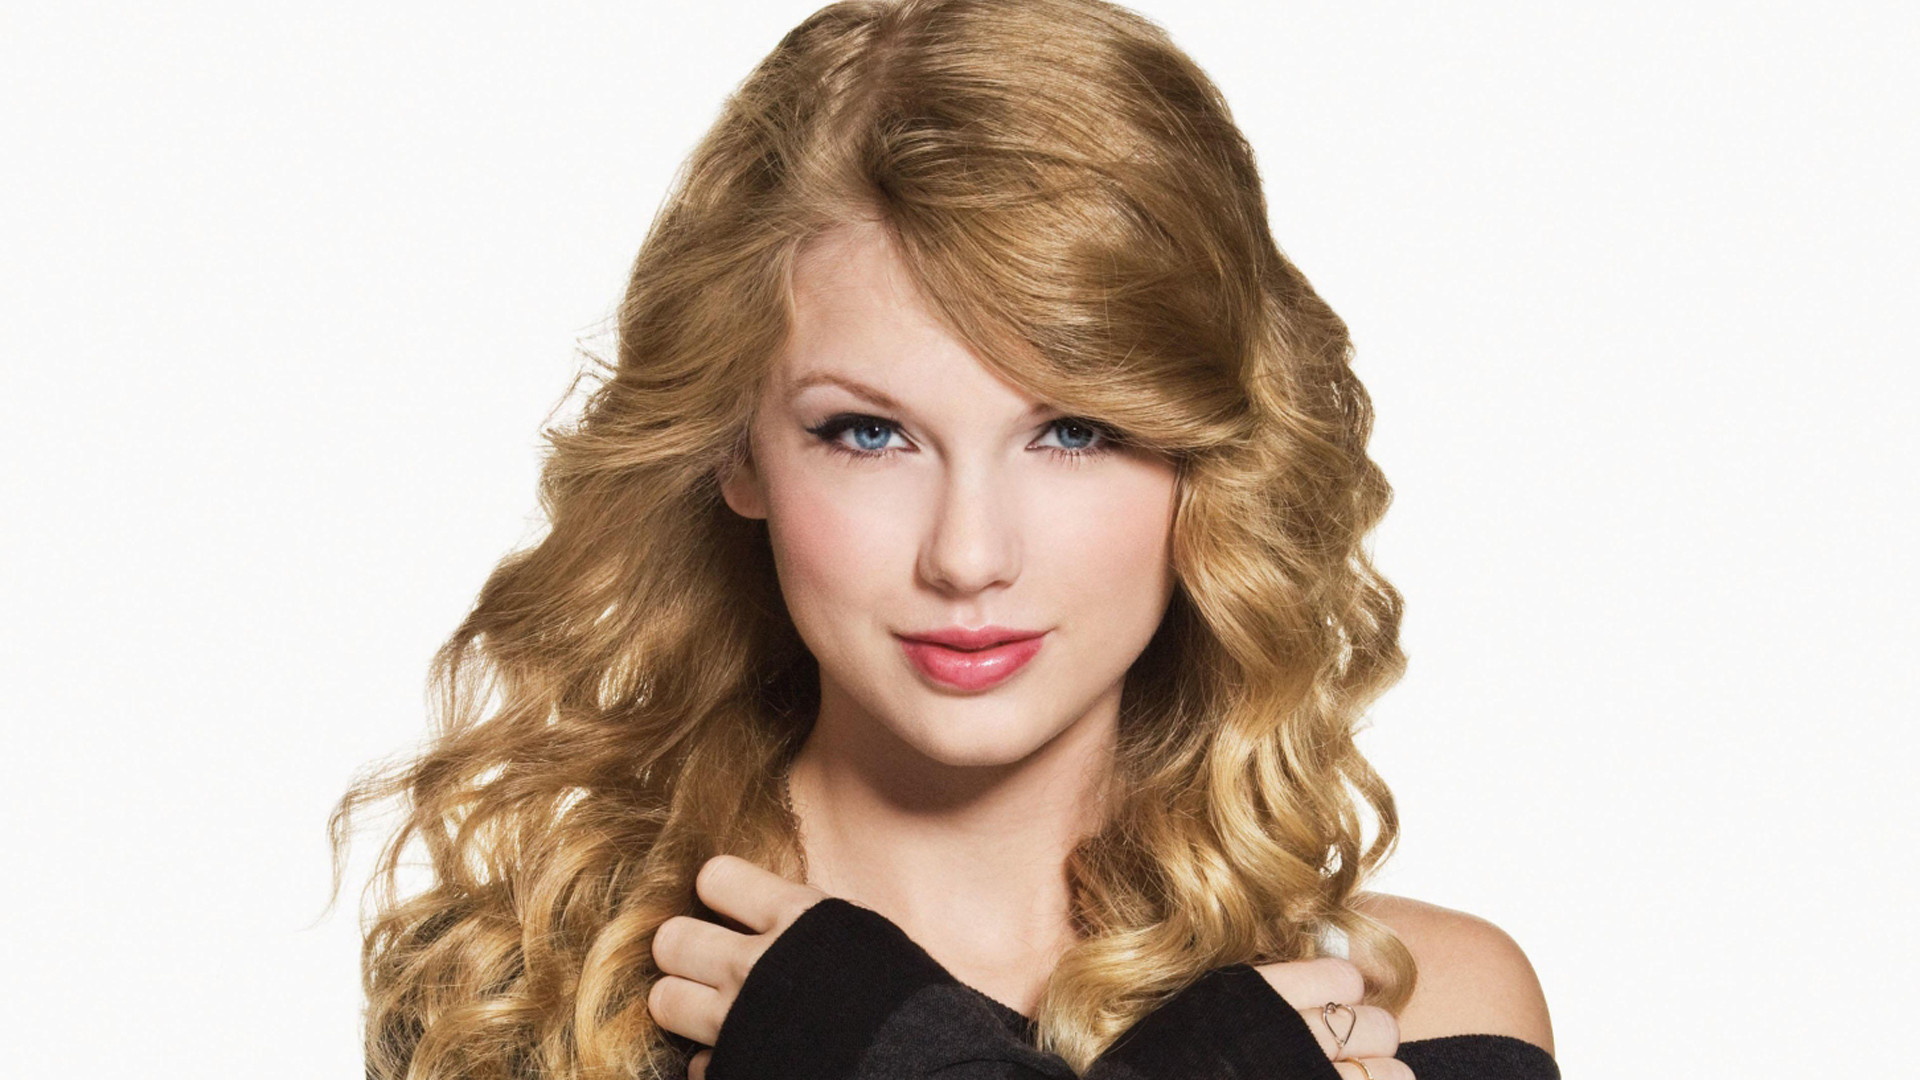 Taylor Swift HD Desktop Wallpaper Image